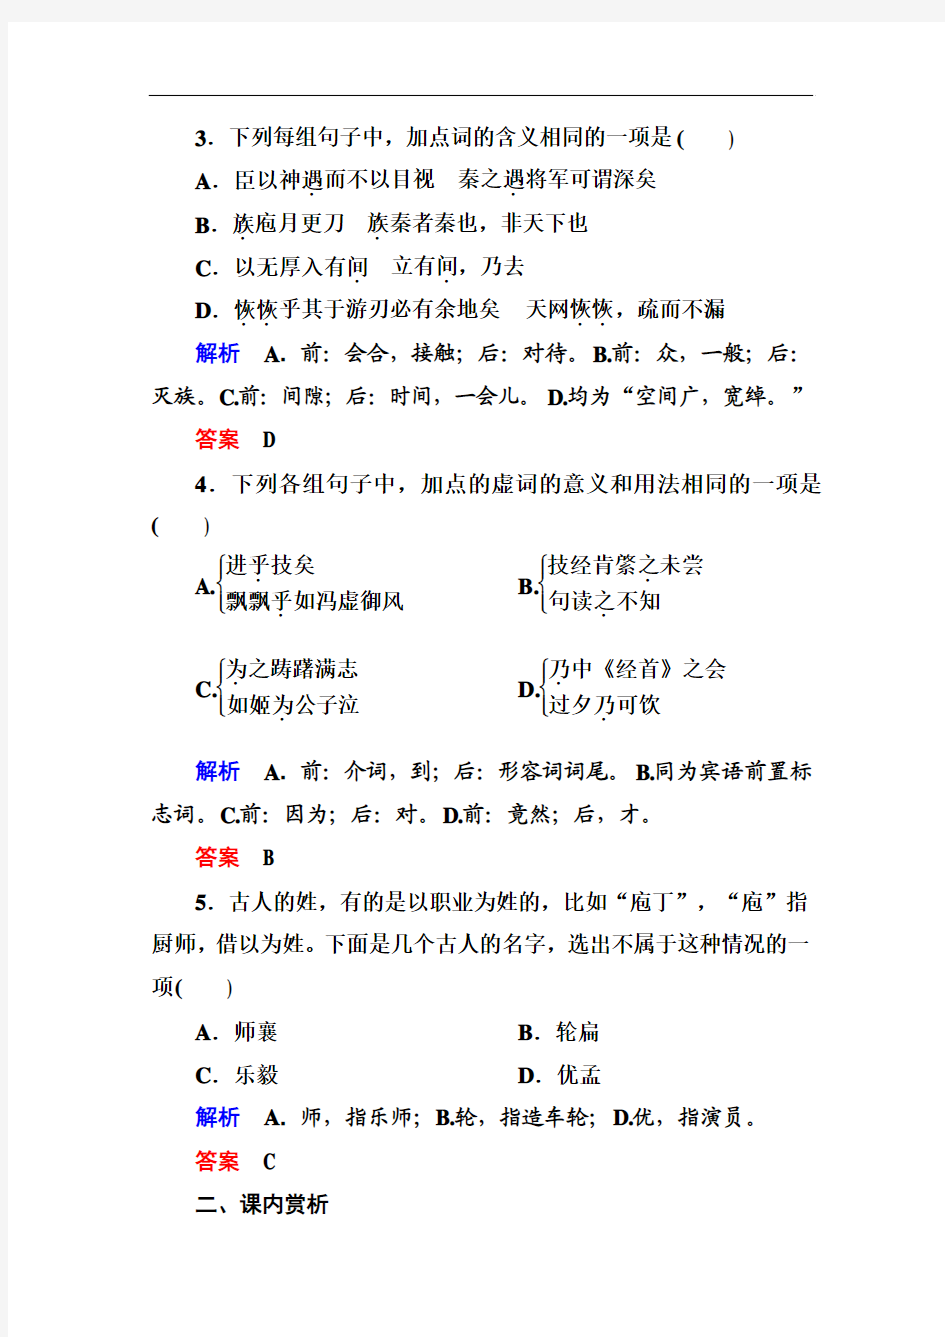 【名师一号】2015高中语文(选修-中国古代诗歌欣)双基限时练13 自主赏析《庖丁解牛》]